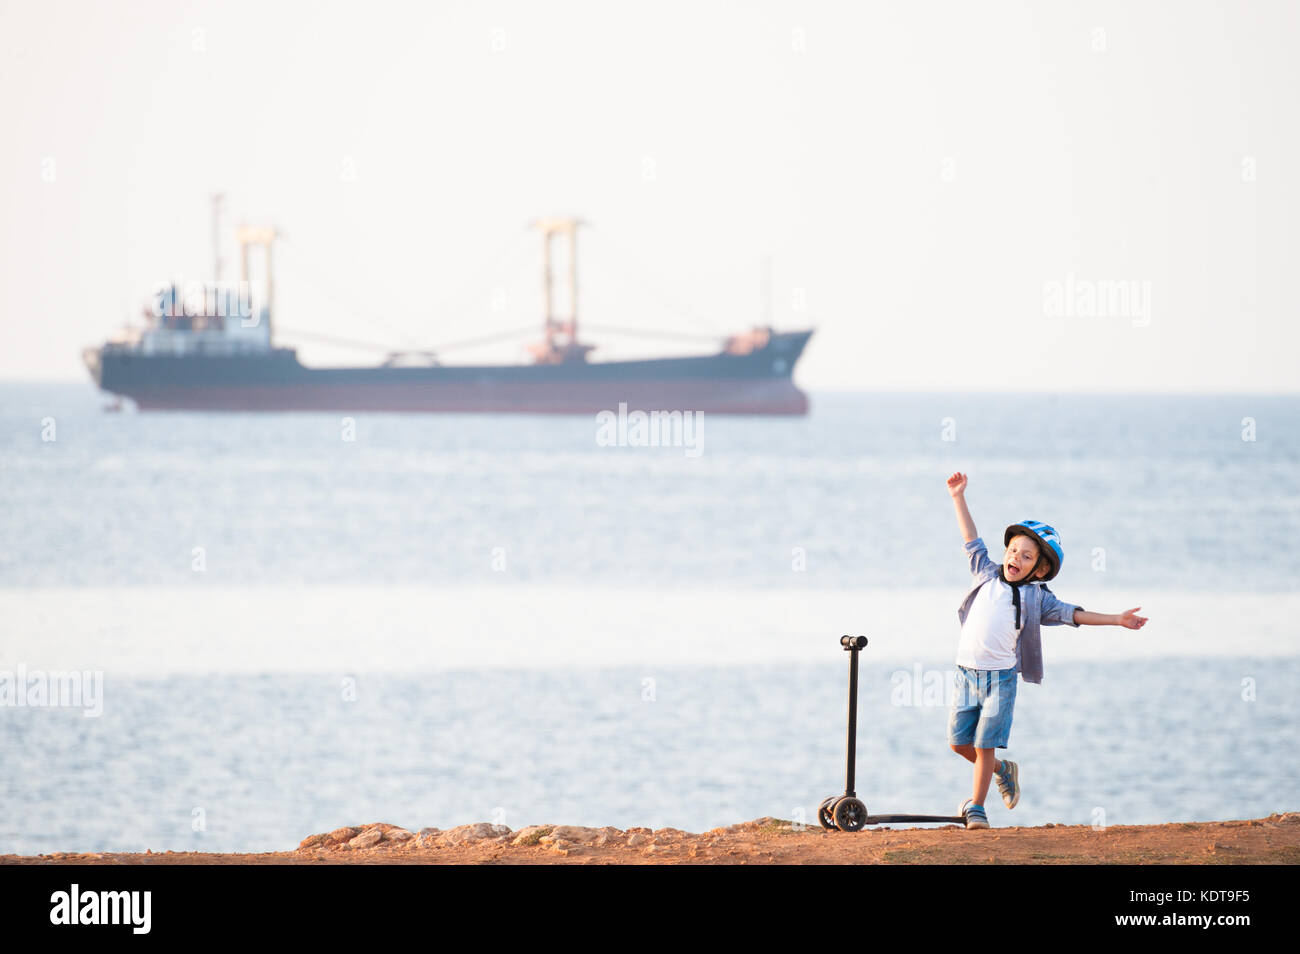 Freudige süßes kleines Kind mit dem Roller an der Küste mit einem Segelschiff Stockfoto